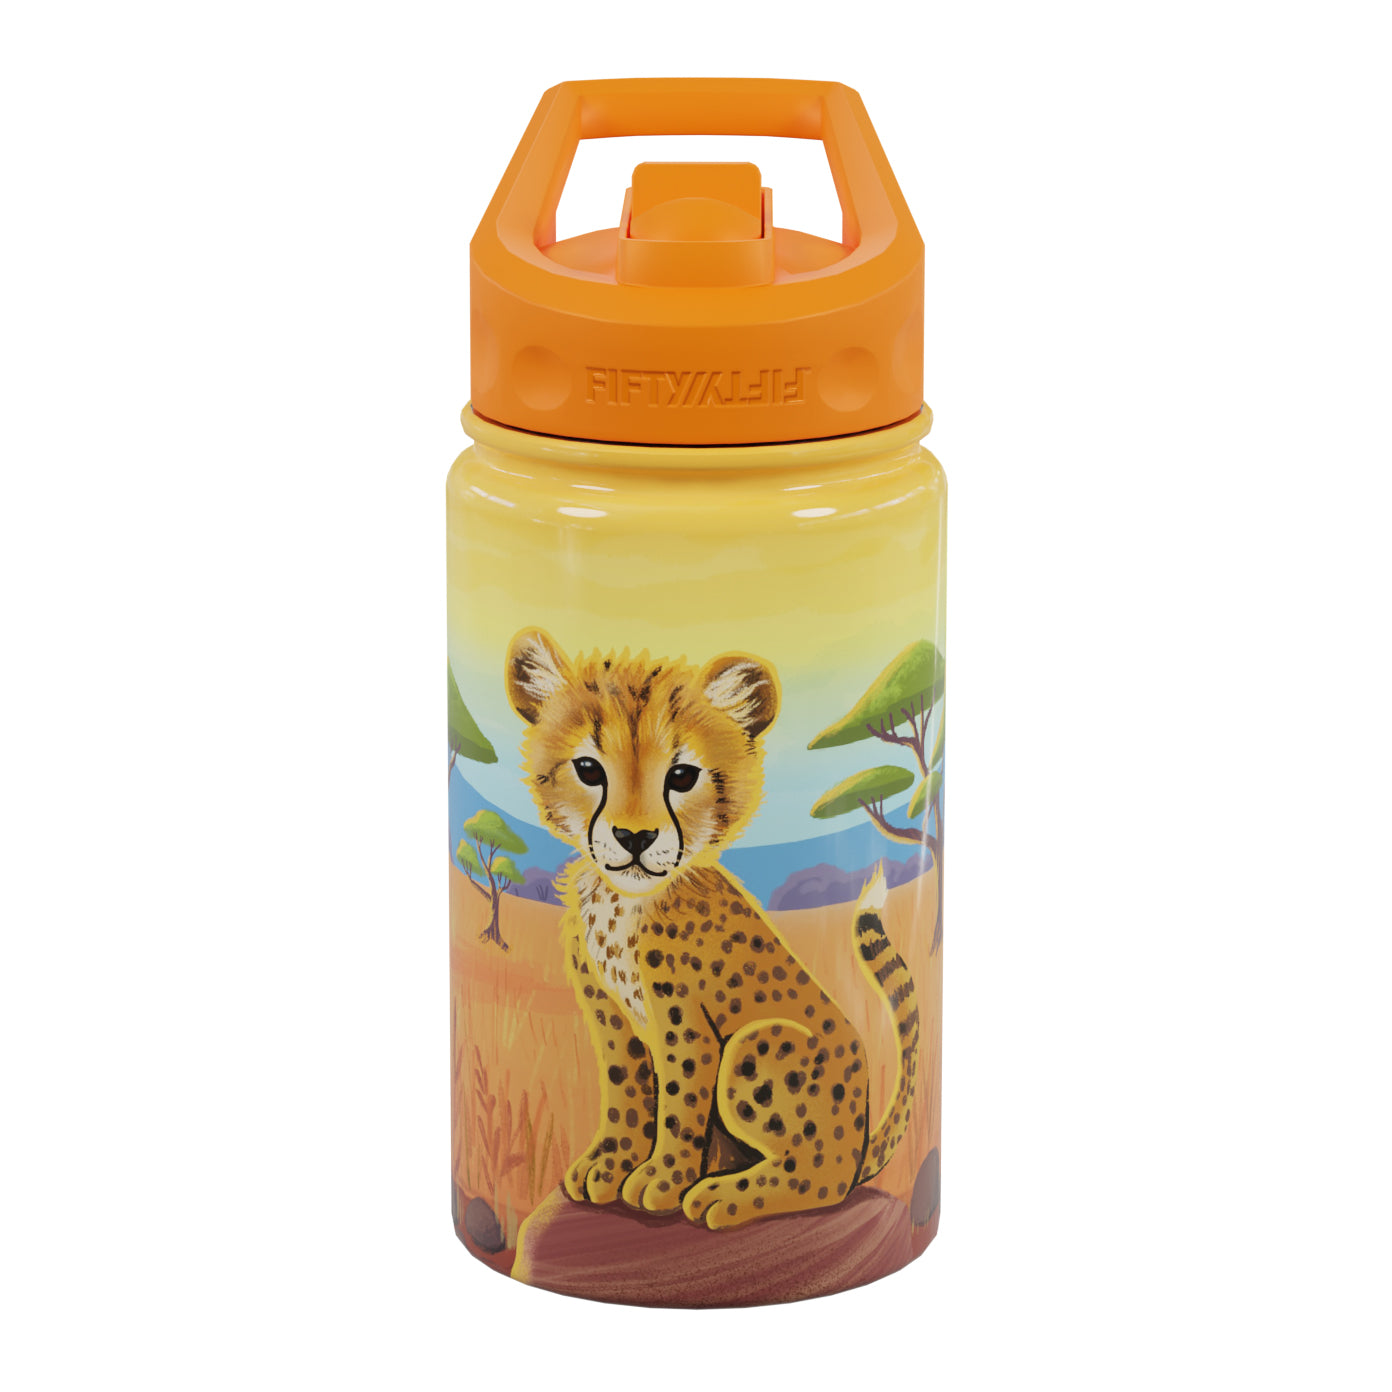 12oz Kids Bottle with Straw Cap - Unicorn - FIFTY/FIFTY®– FIFTY/FIFTY  Bottles